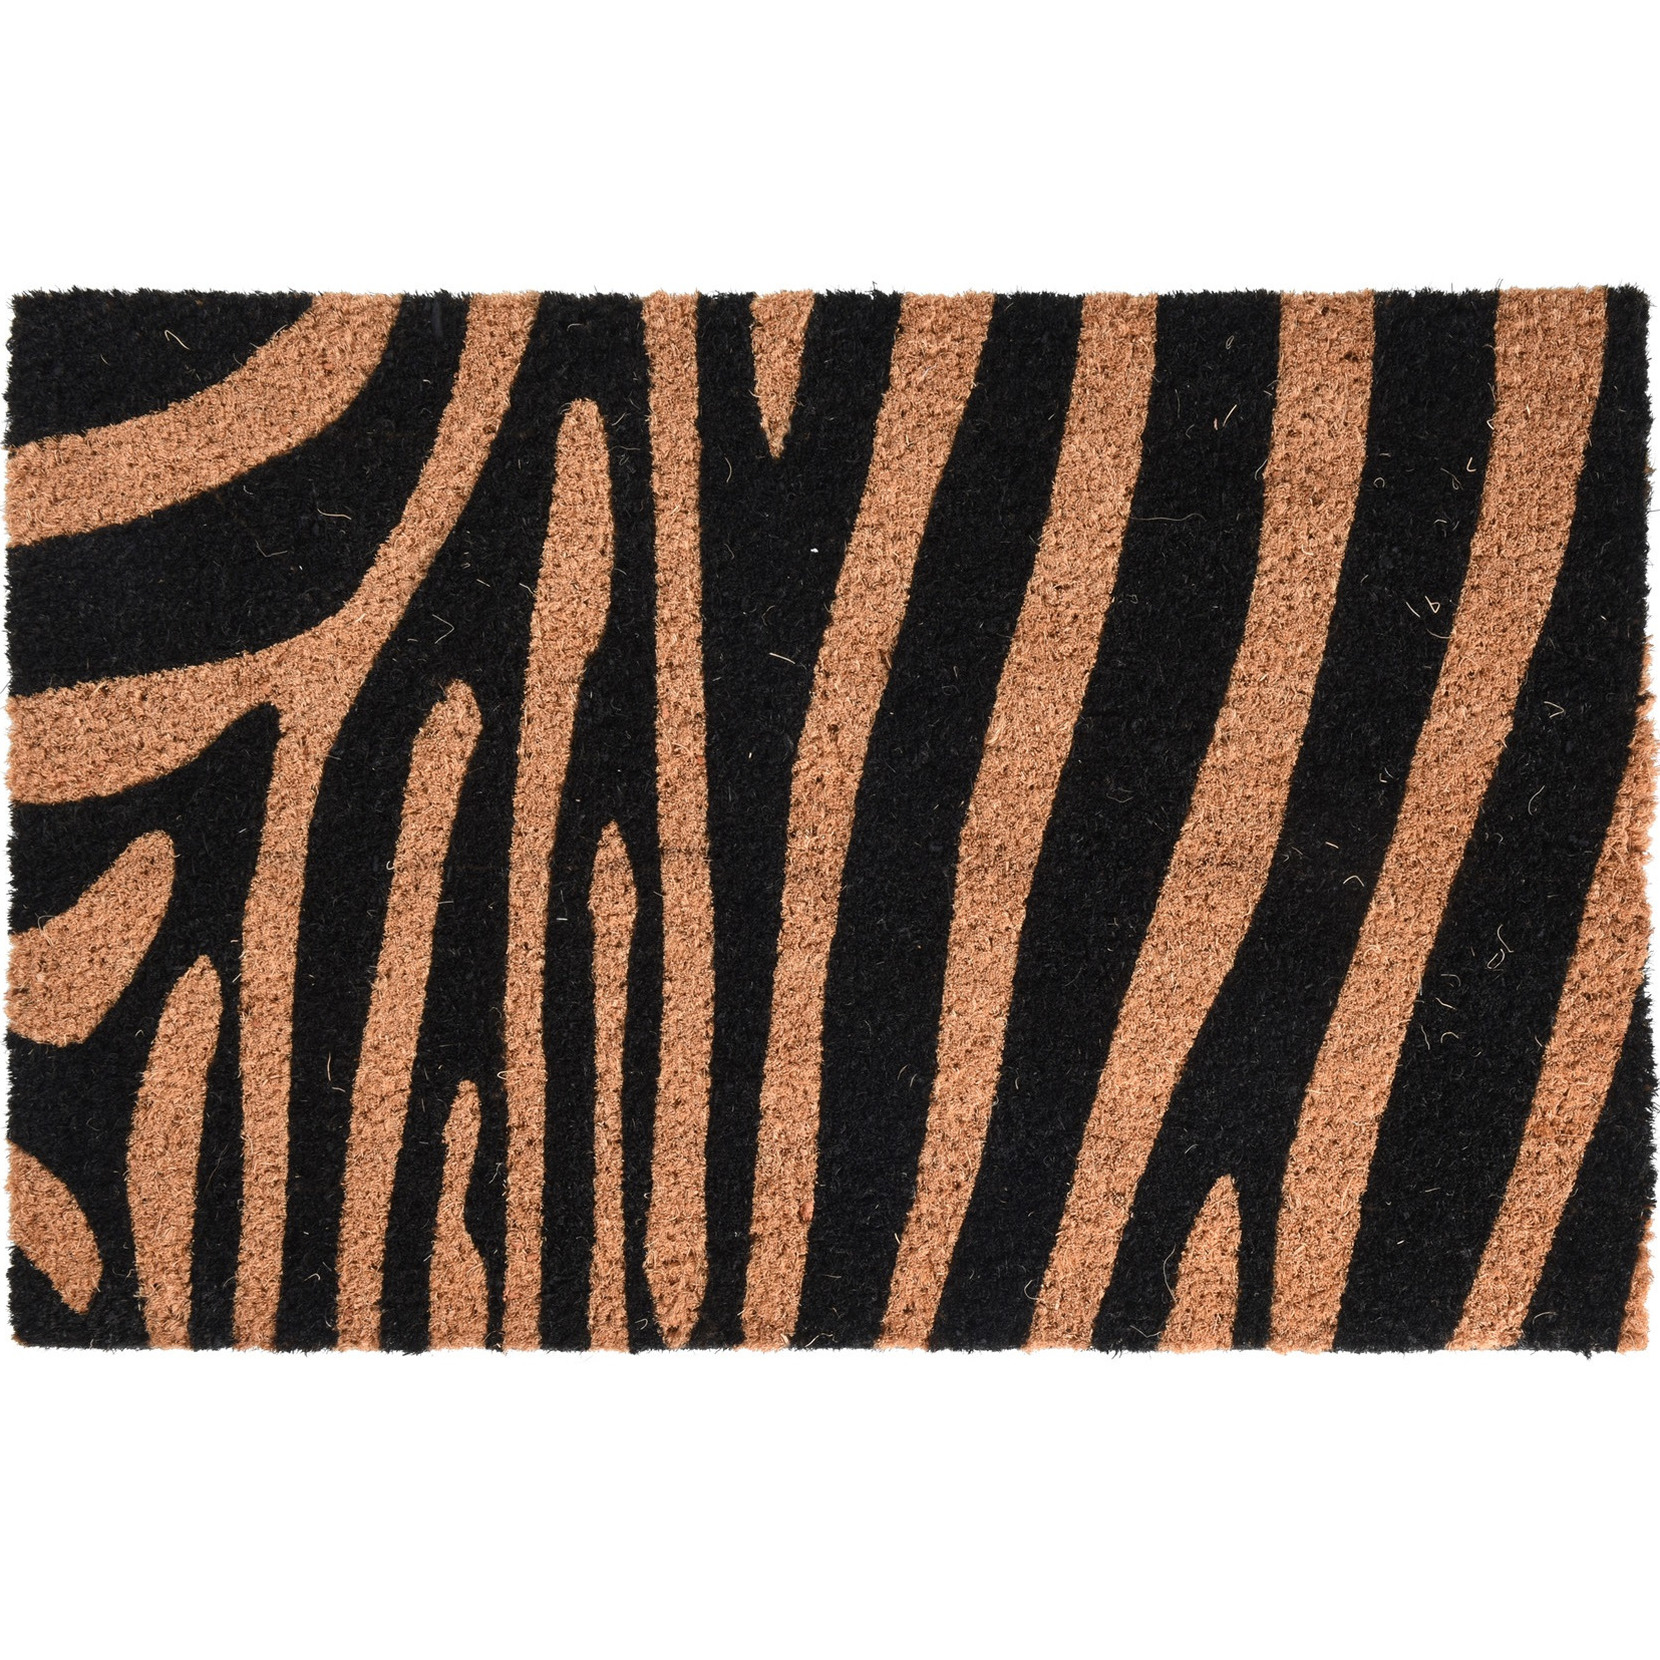 Dieren tijger/zebra opdruk deurmat/buitenmat kokos 39 x 59 cm